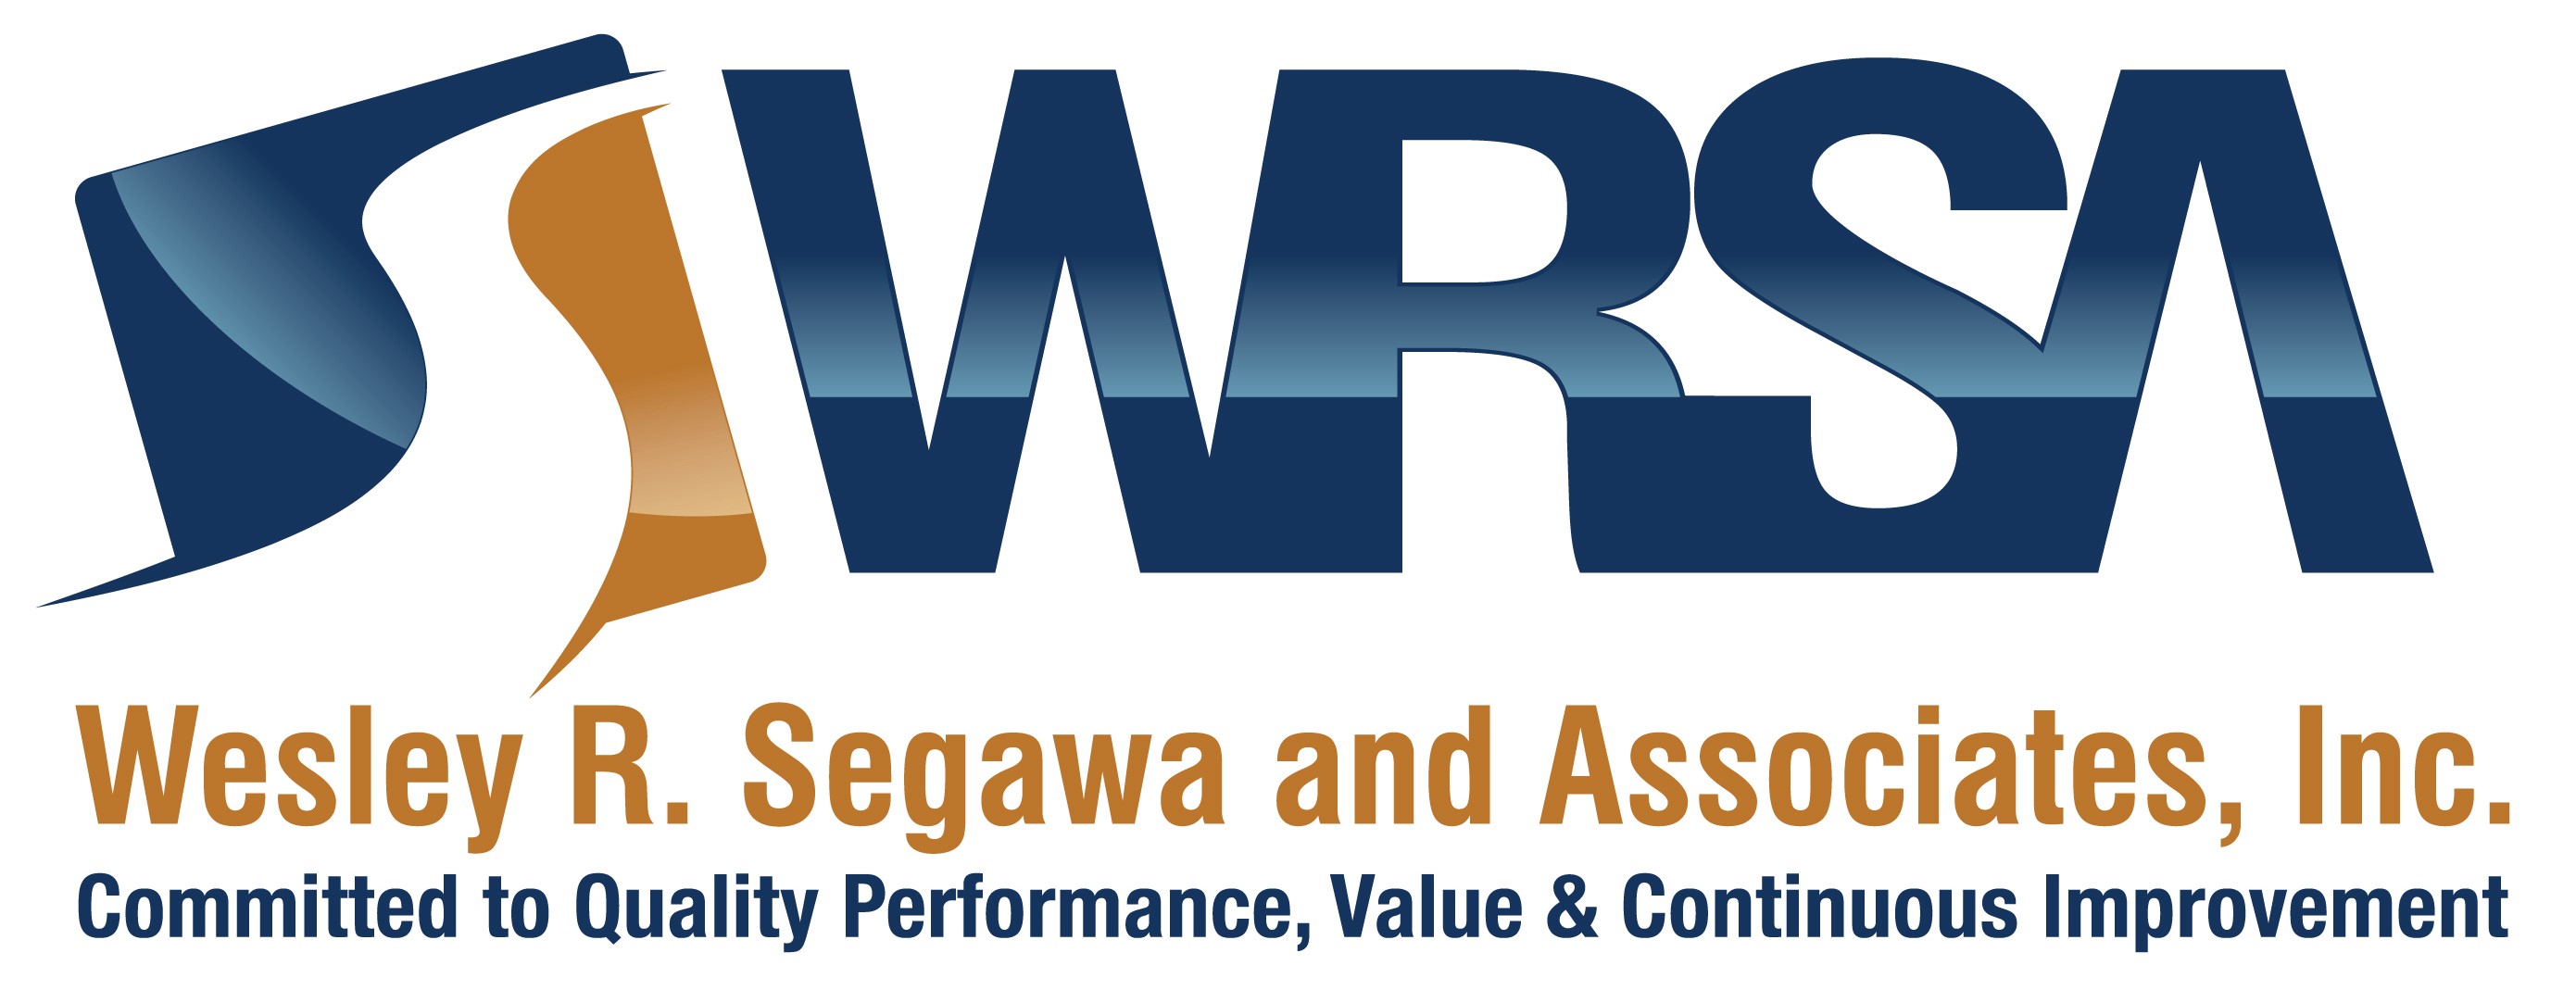 5. Wesley R. Segawa y asociados (Nivel 4)